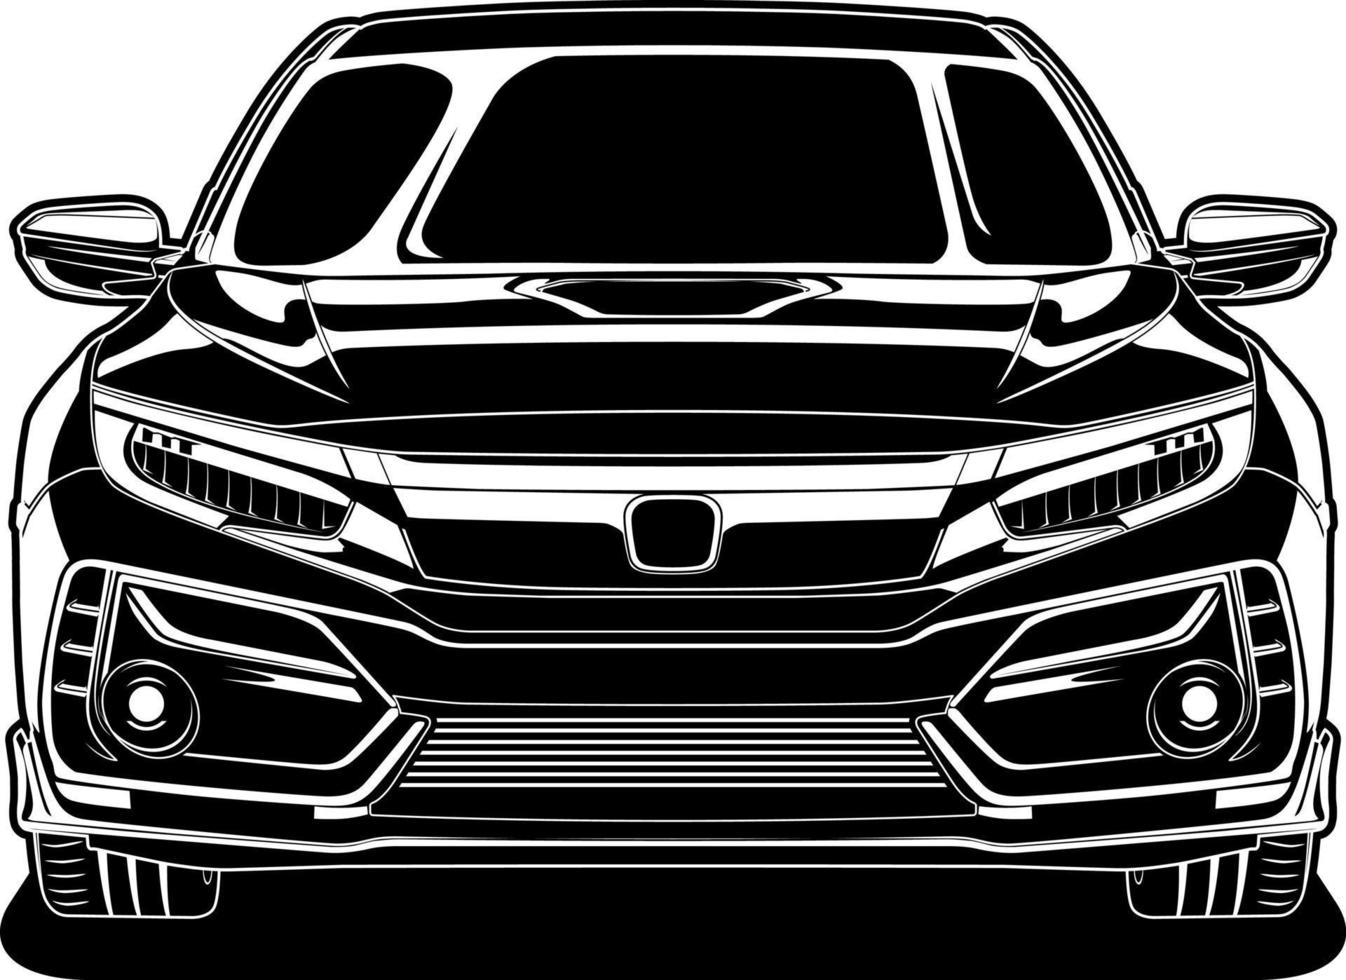 ilustração vetorial de carro preto e branco para design conceitual vetor